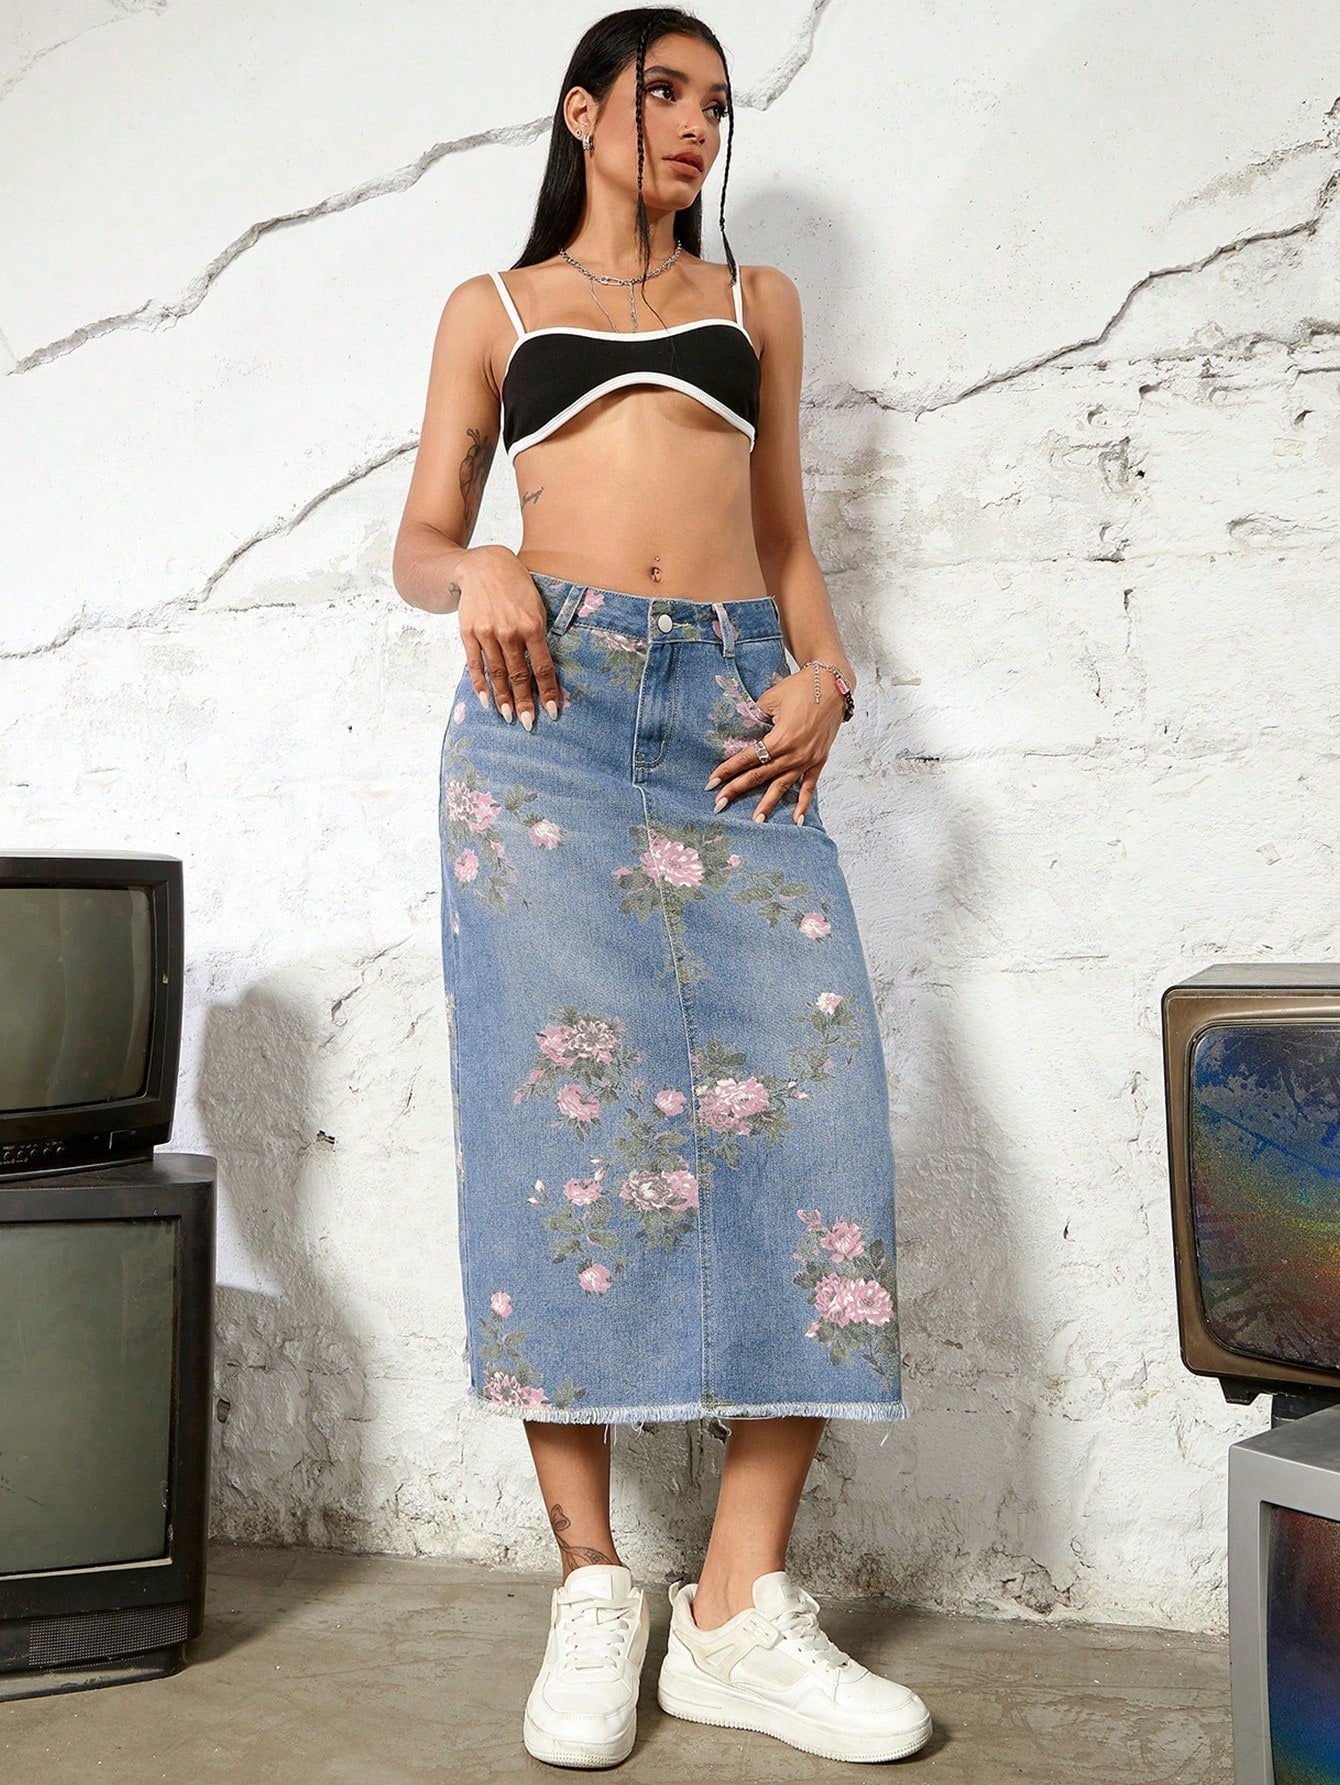 Street Vintage Charm: Floral Print Distressed Denim Skirt Split Back Design